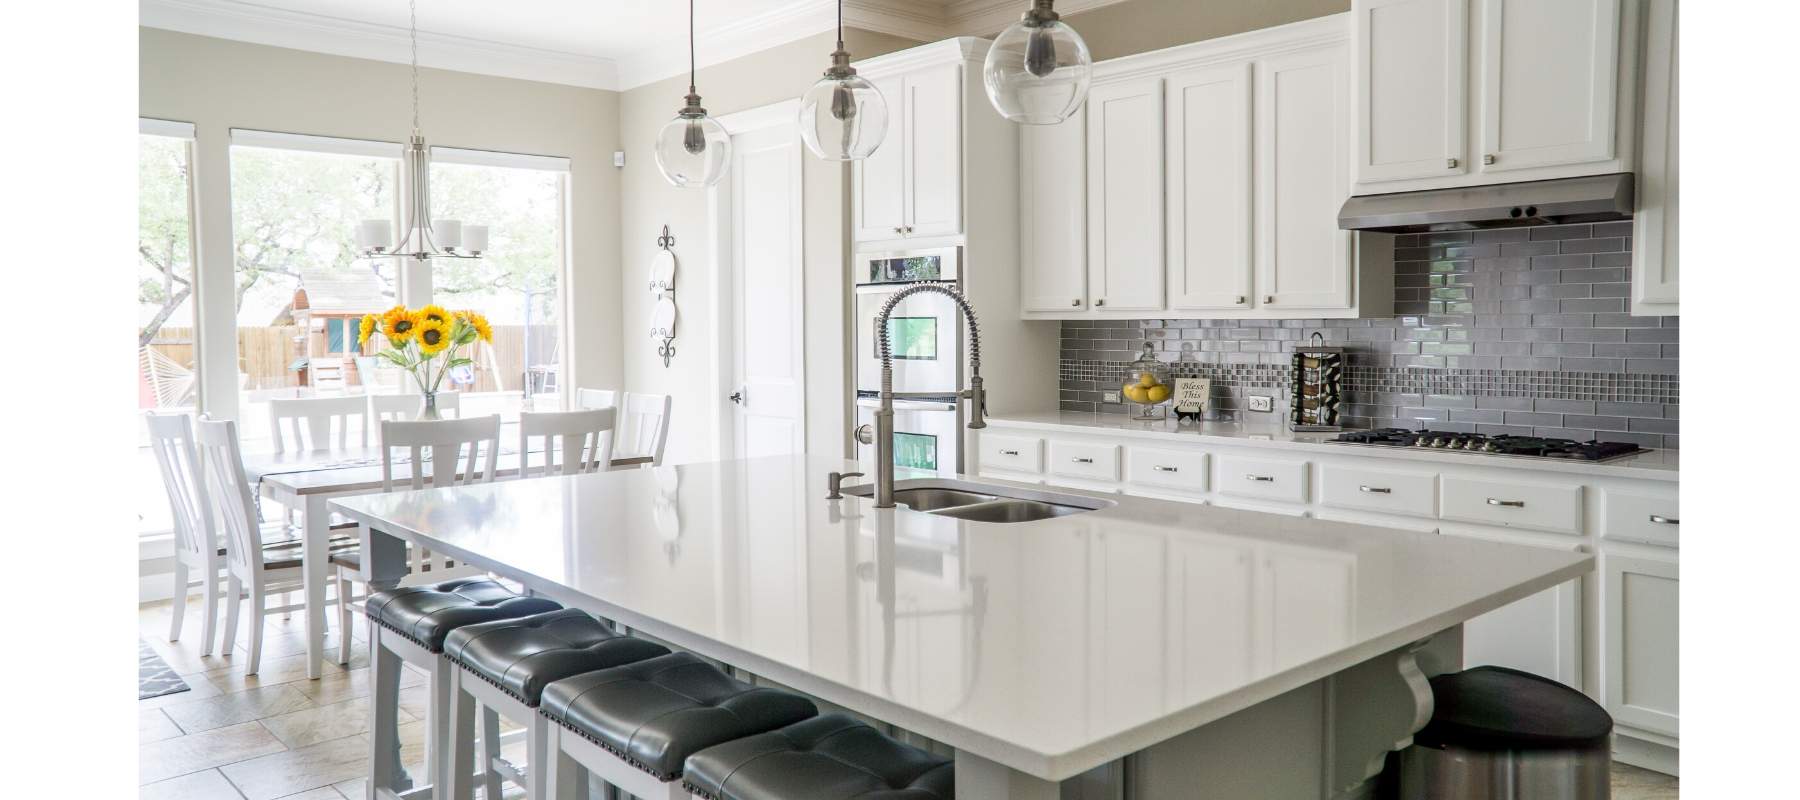 White kitchen with marble kitchen island